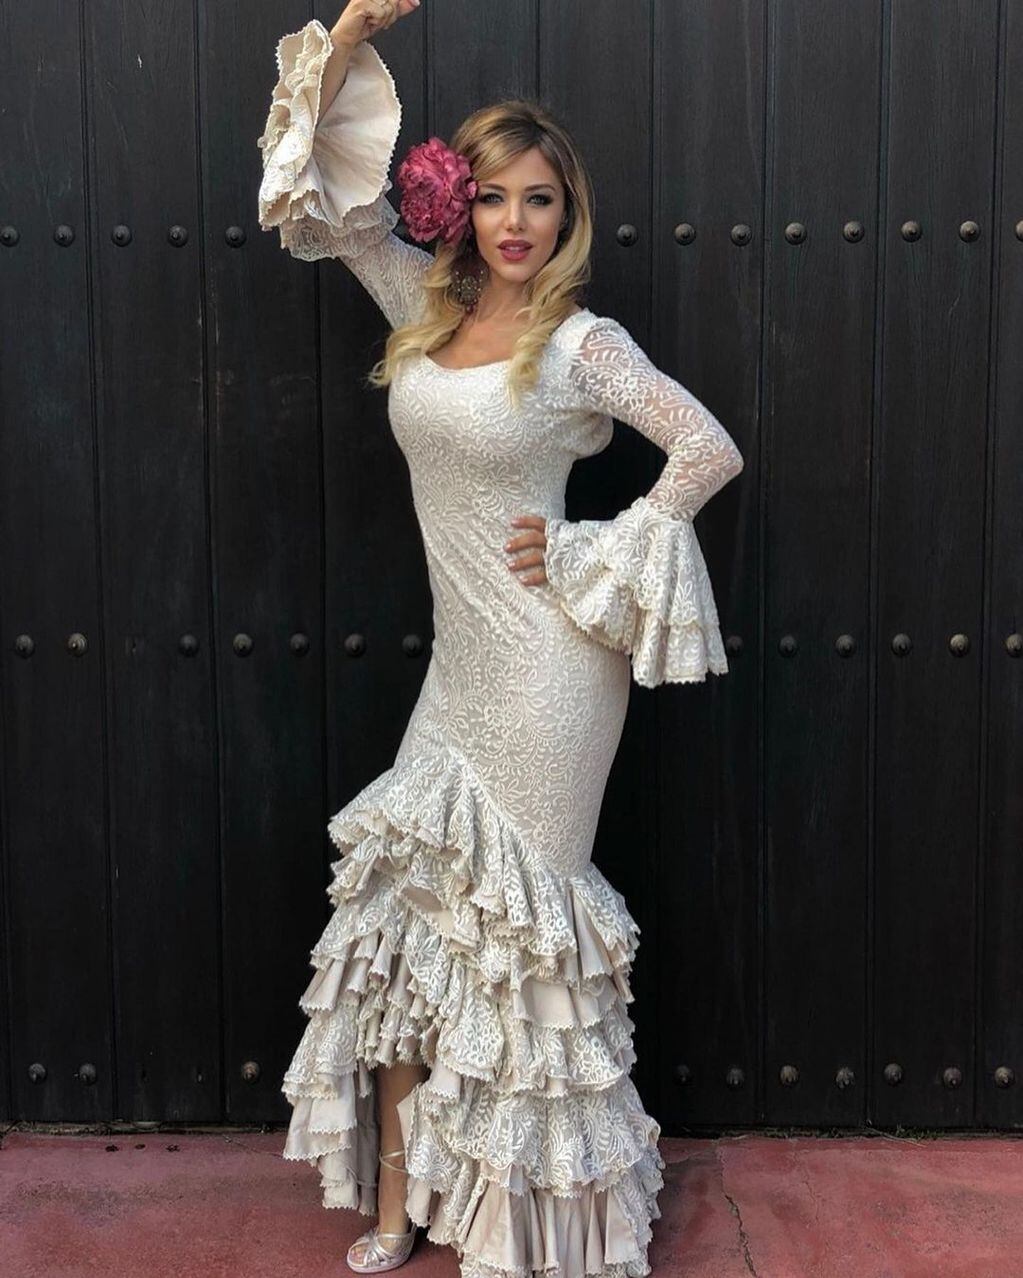 Y olé!!! El posteo de Evangelina junto a su vestido de tipo flamenco que cautivó las redes.